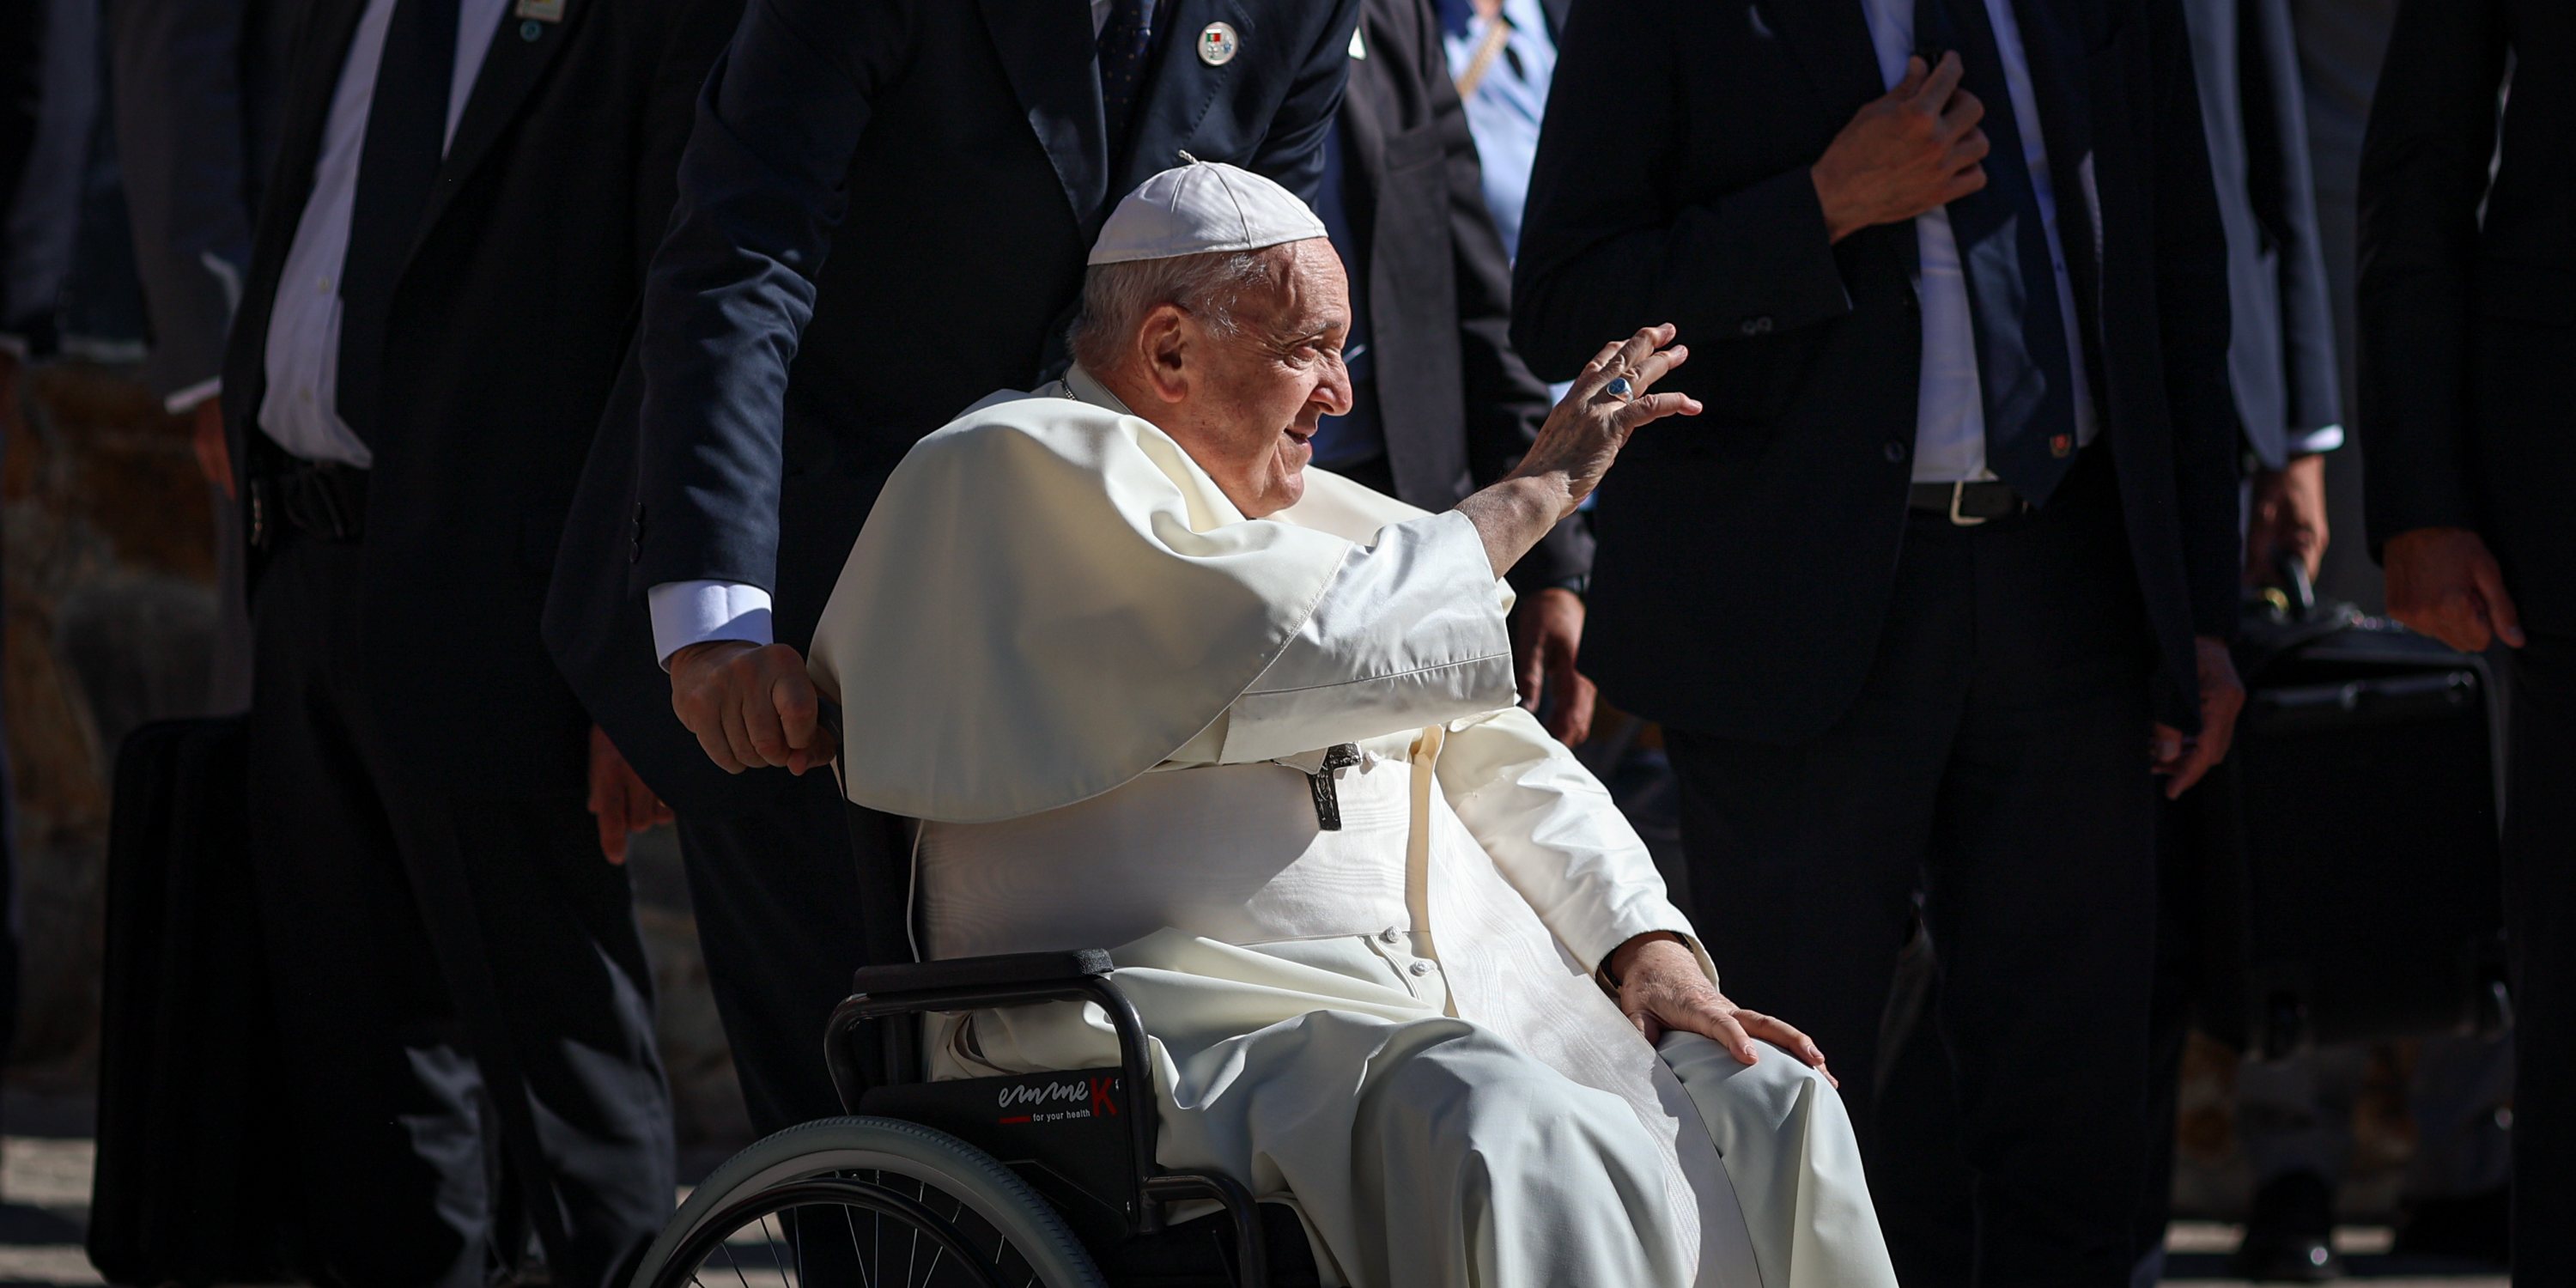 O Papa Francisco na chegada ao bairro da Serafina, sob um forte dispositivo de segurança